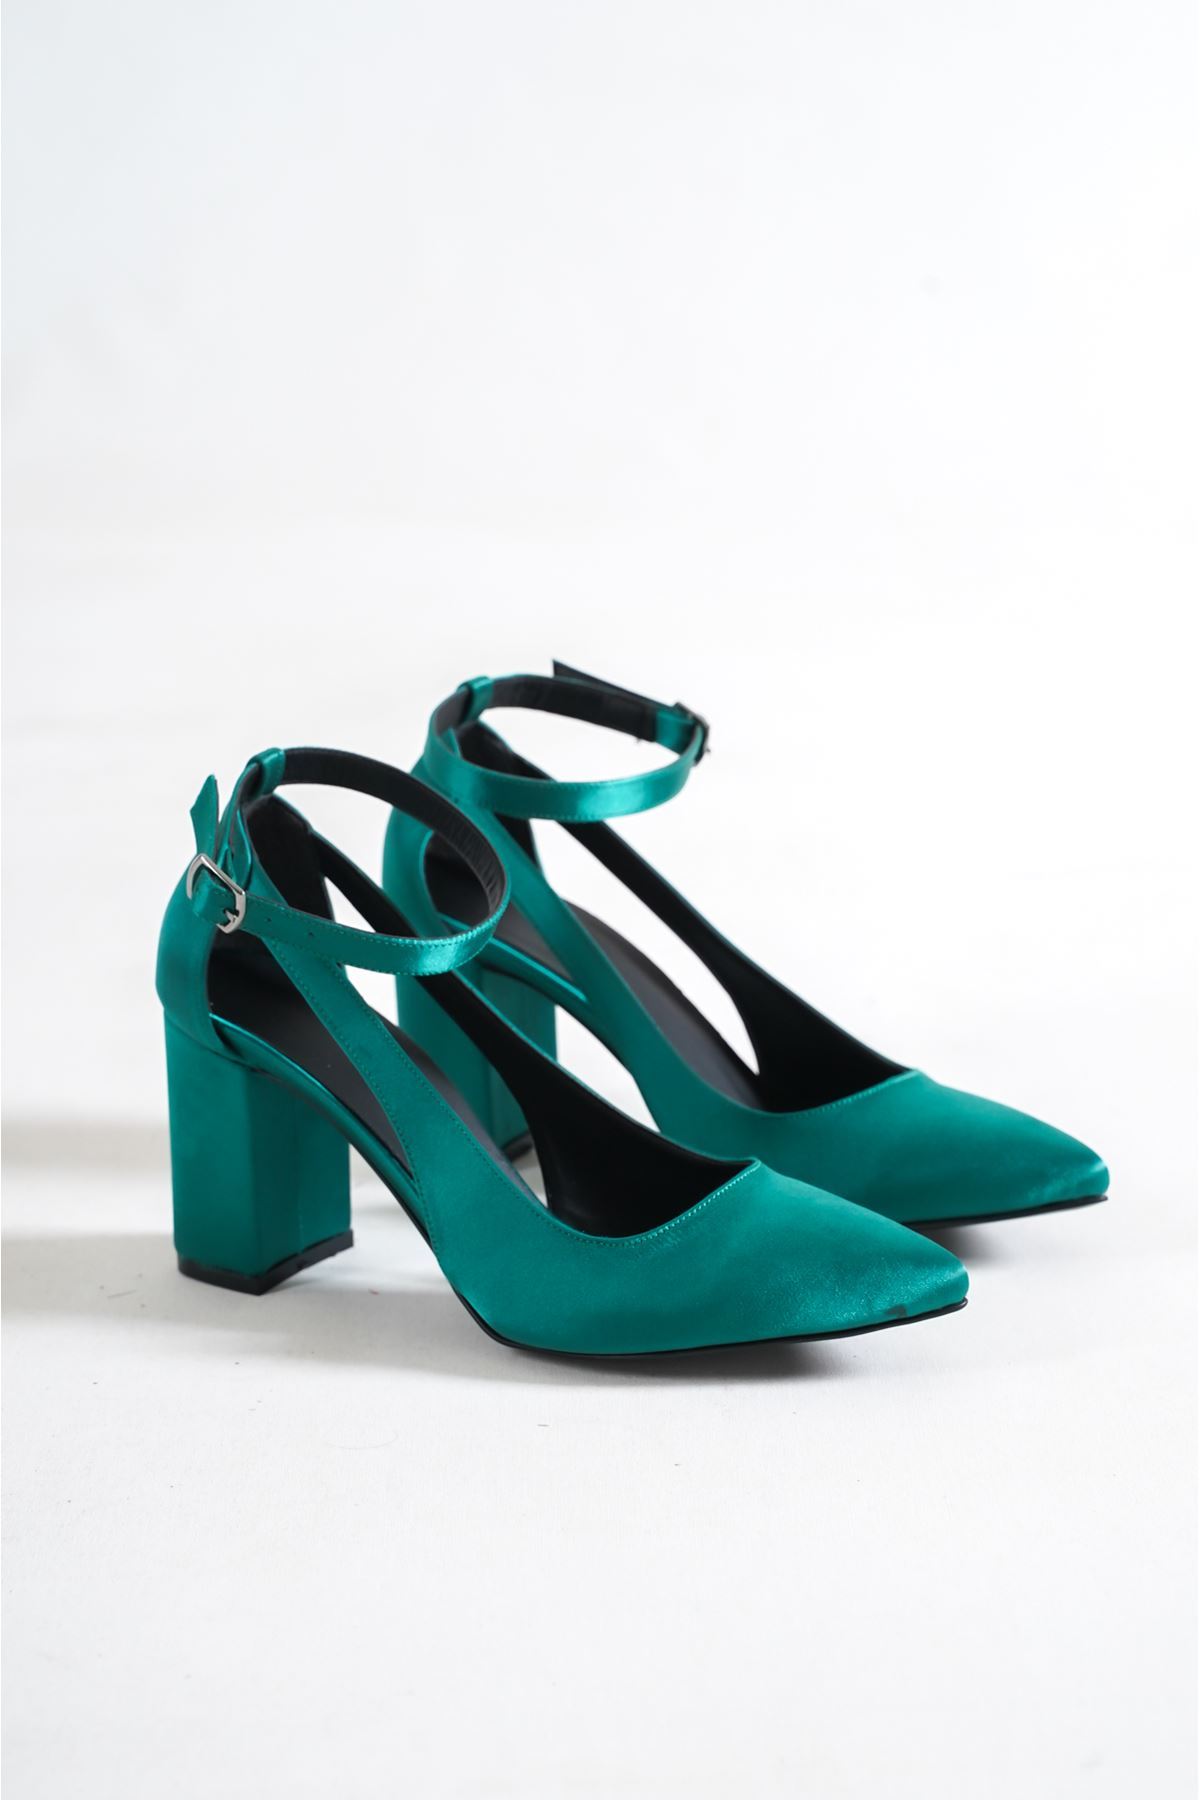 Hilux Yeşil Saten  Kısa Topuklu Kadın Ayakkabı